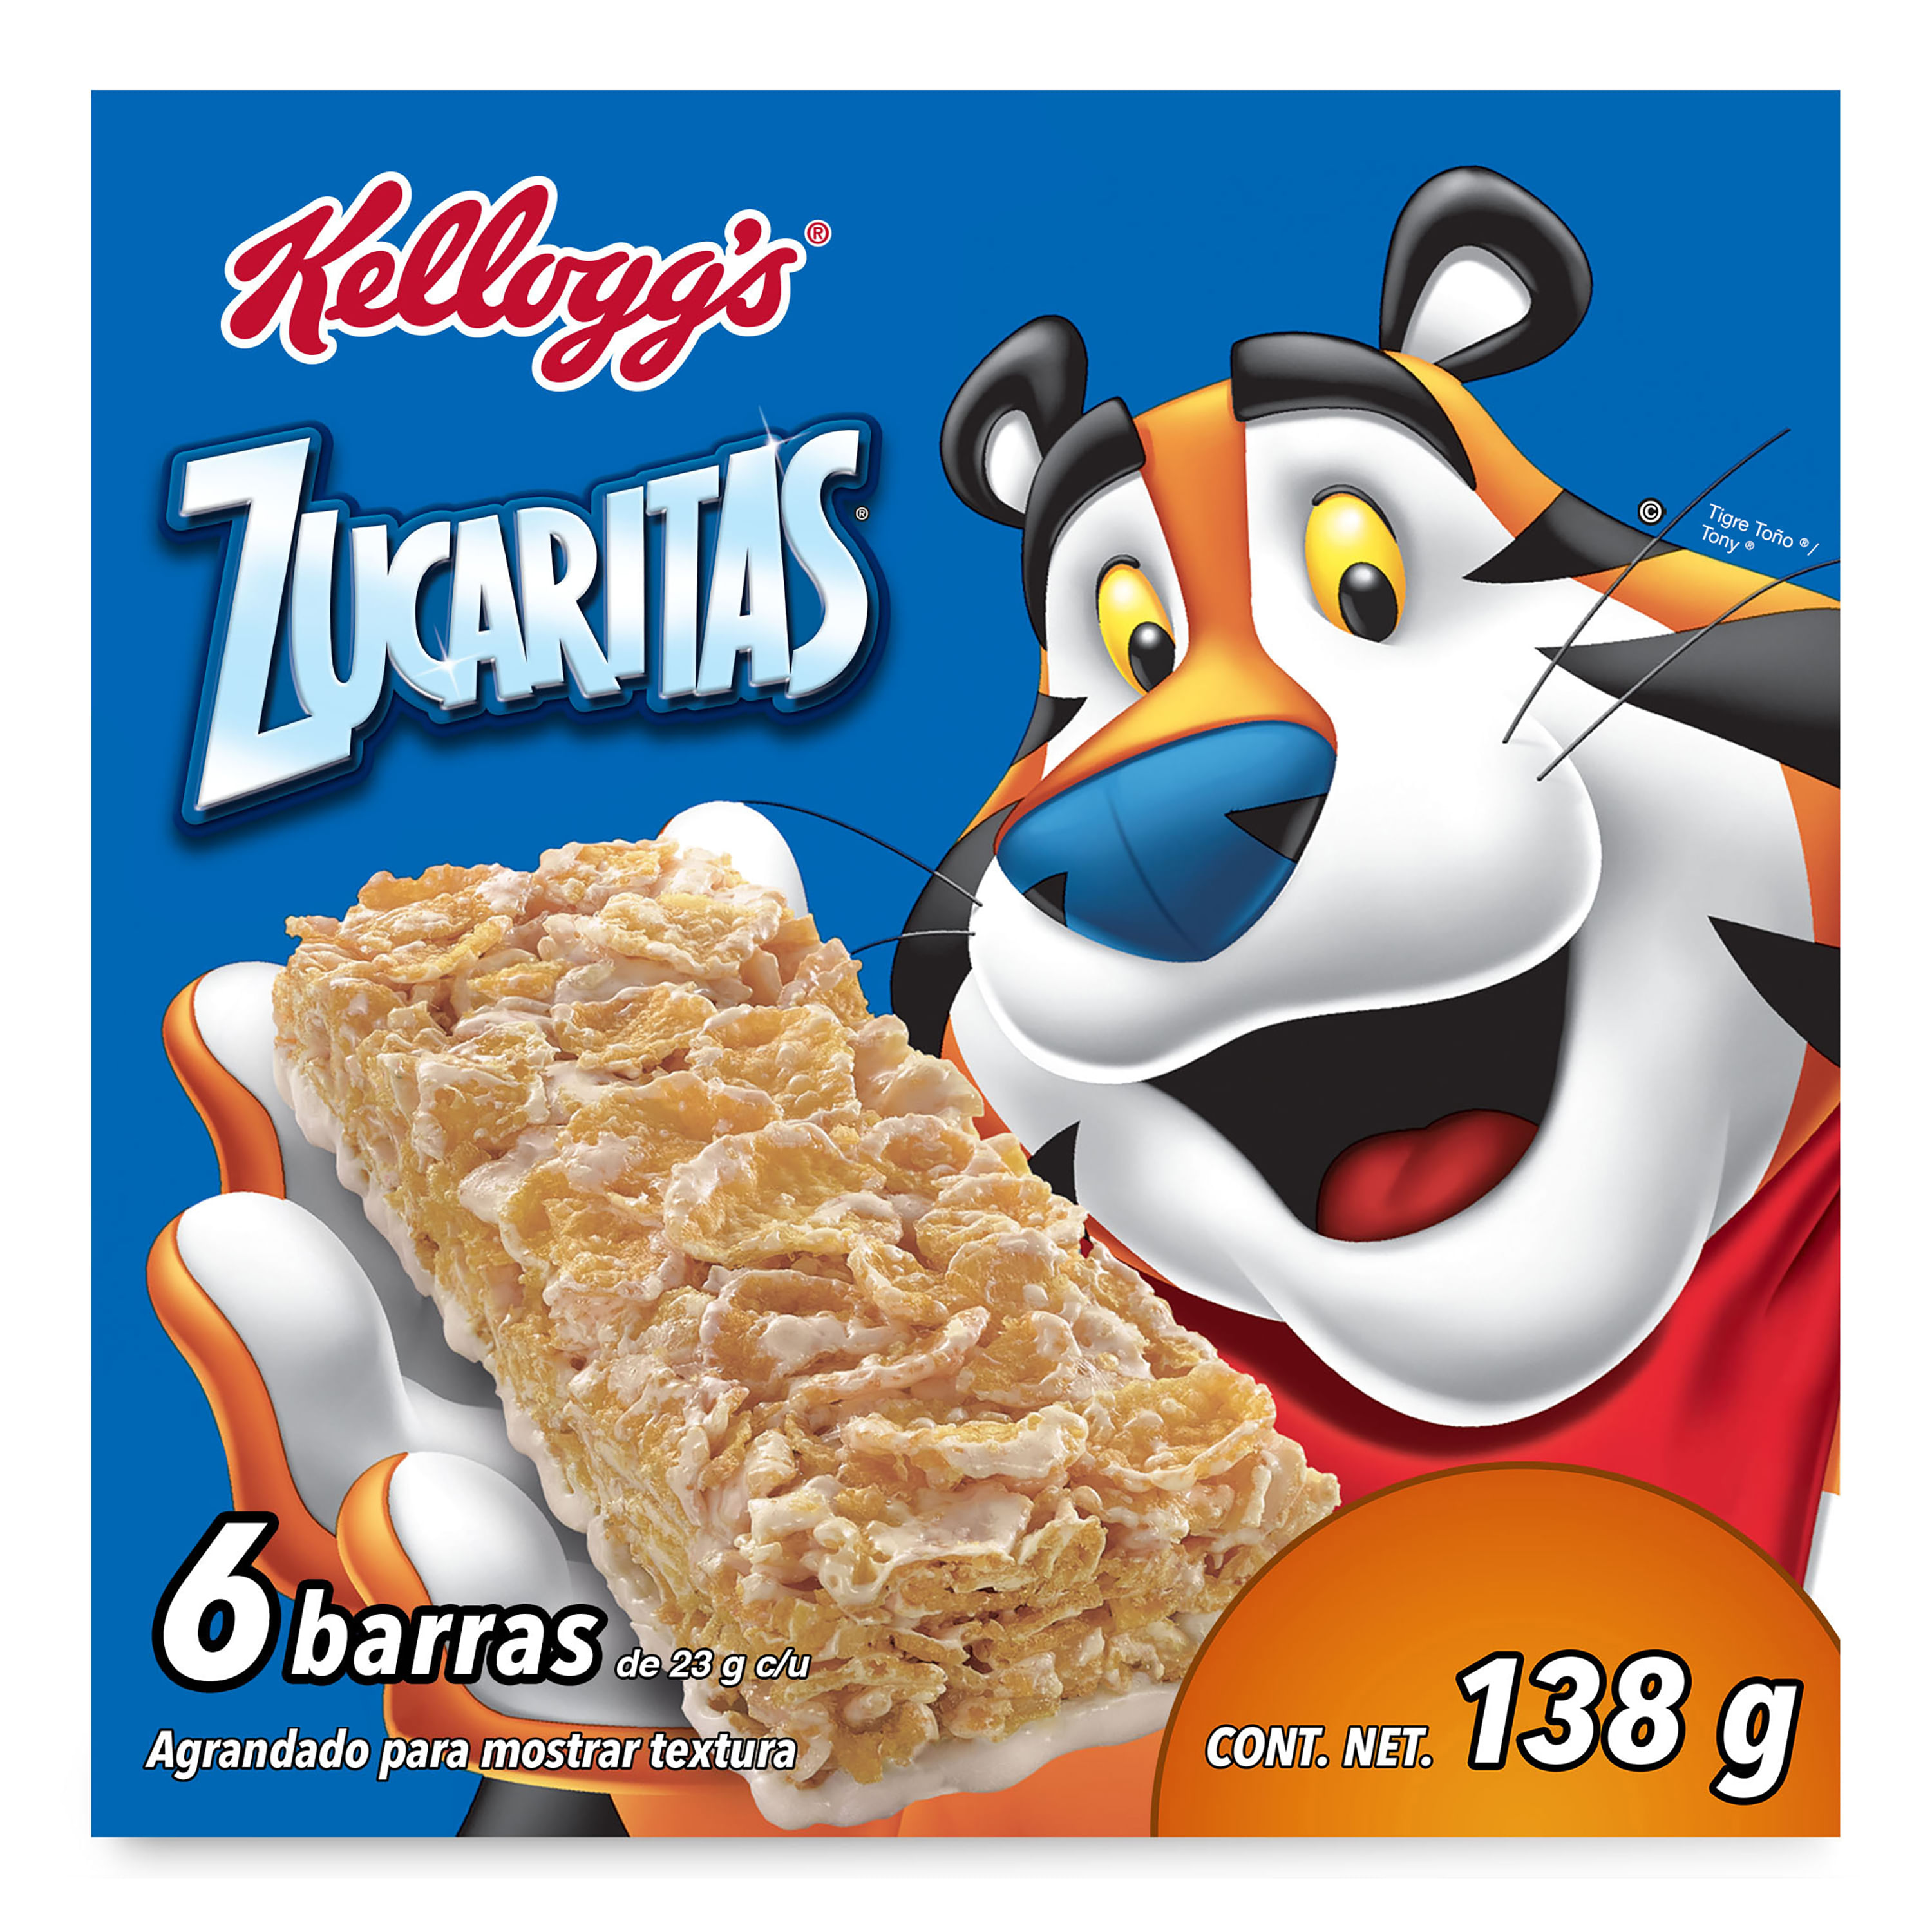 Barra-Kellogg-Zucaritas-de-cereal-Caja-de-6-unidades-136G-1-5217